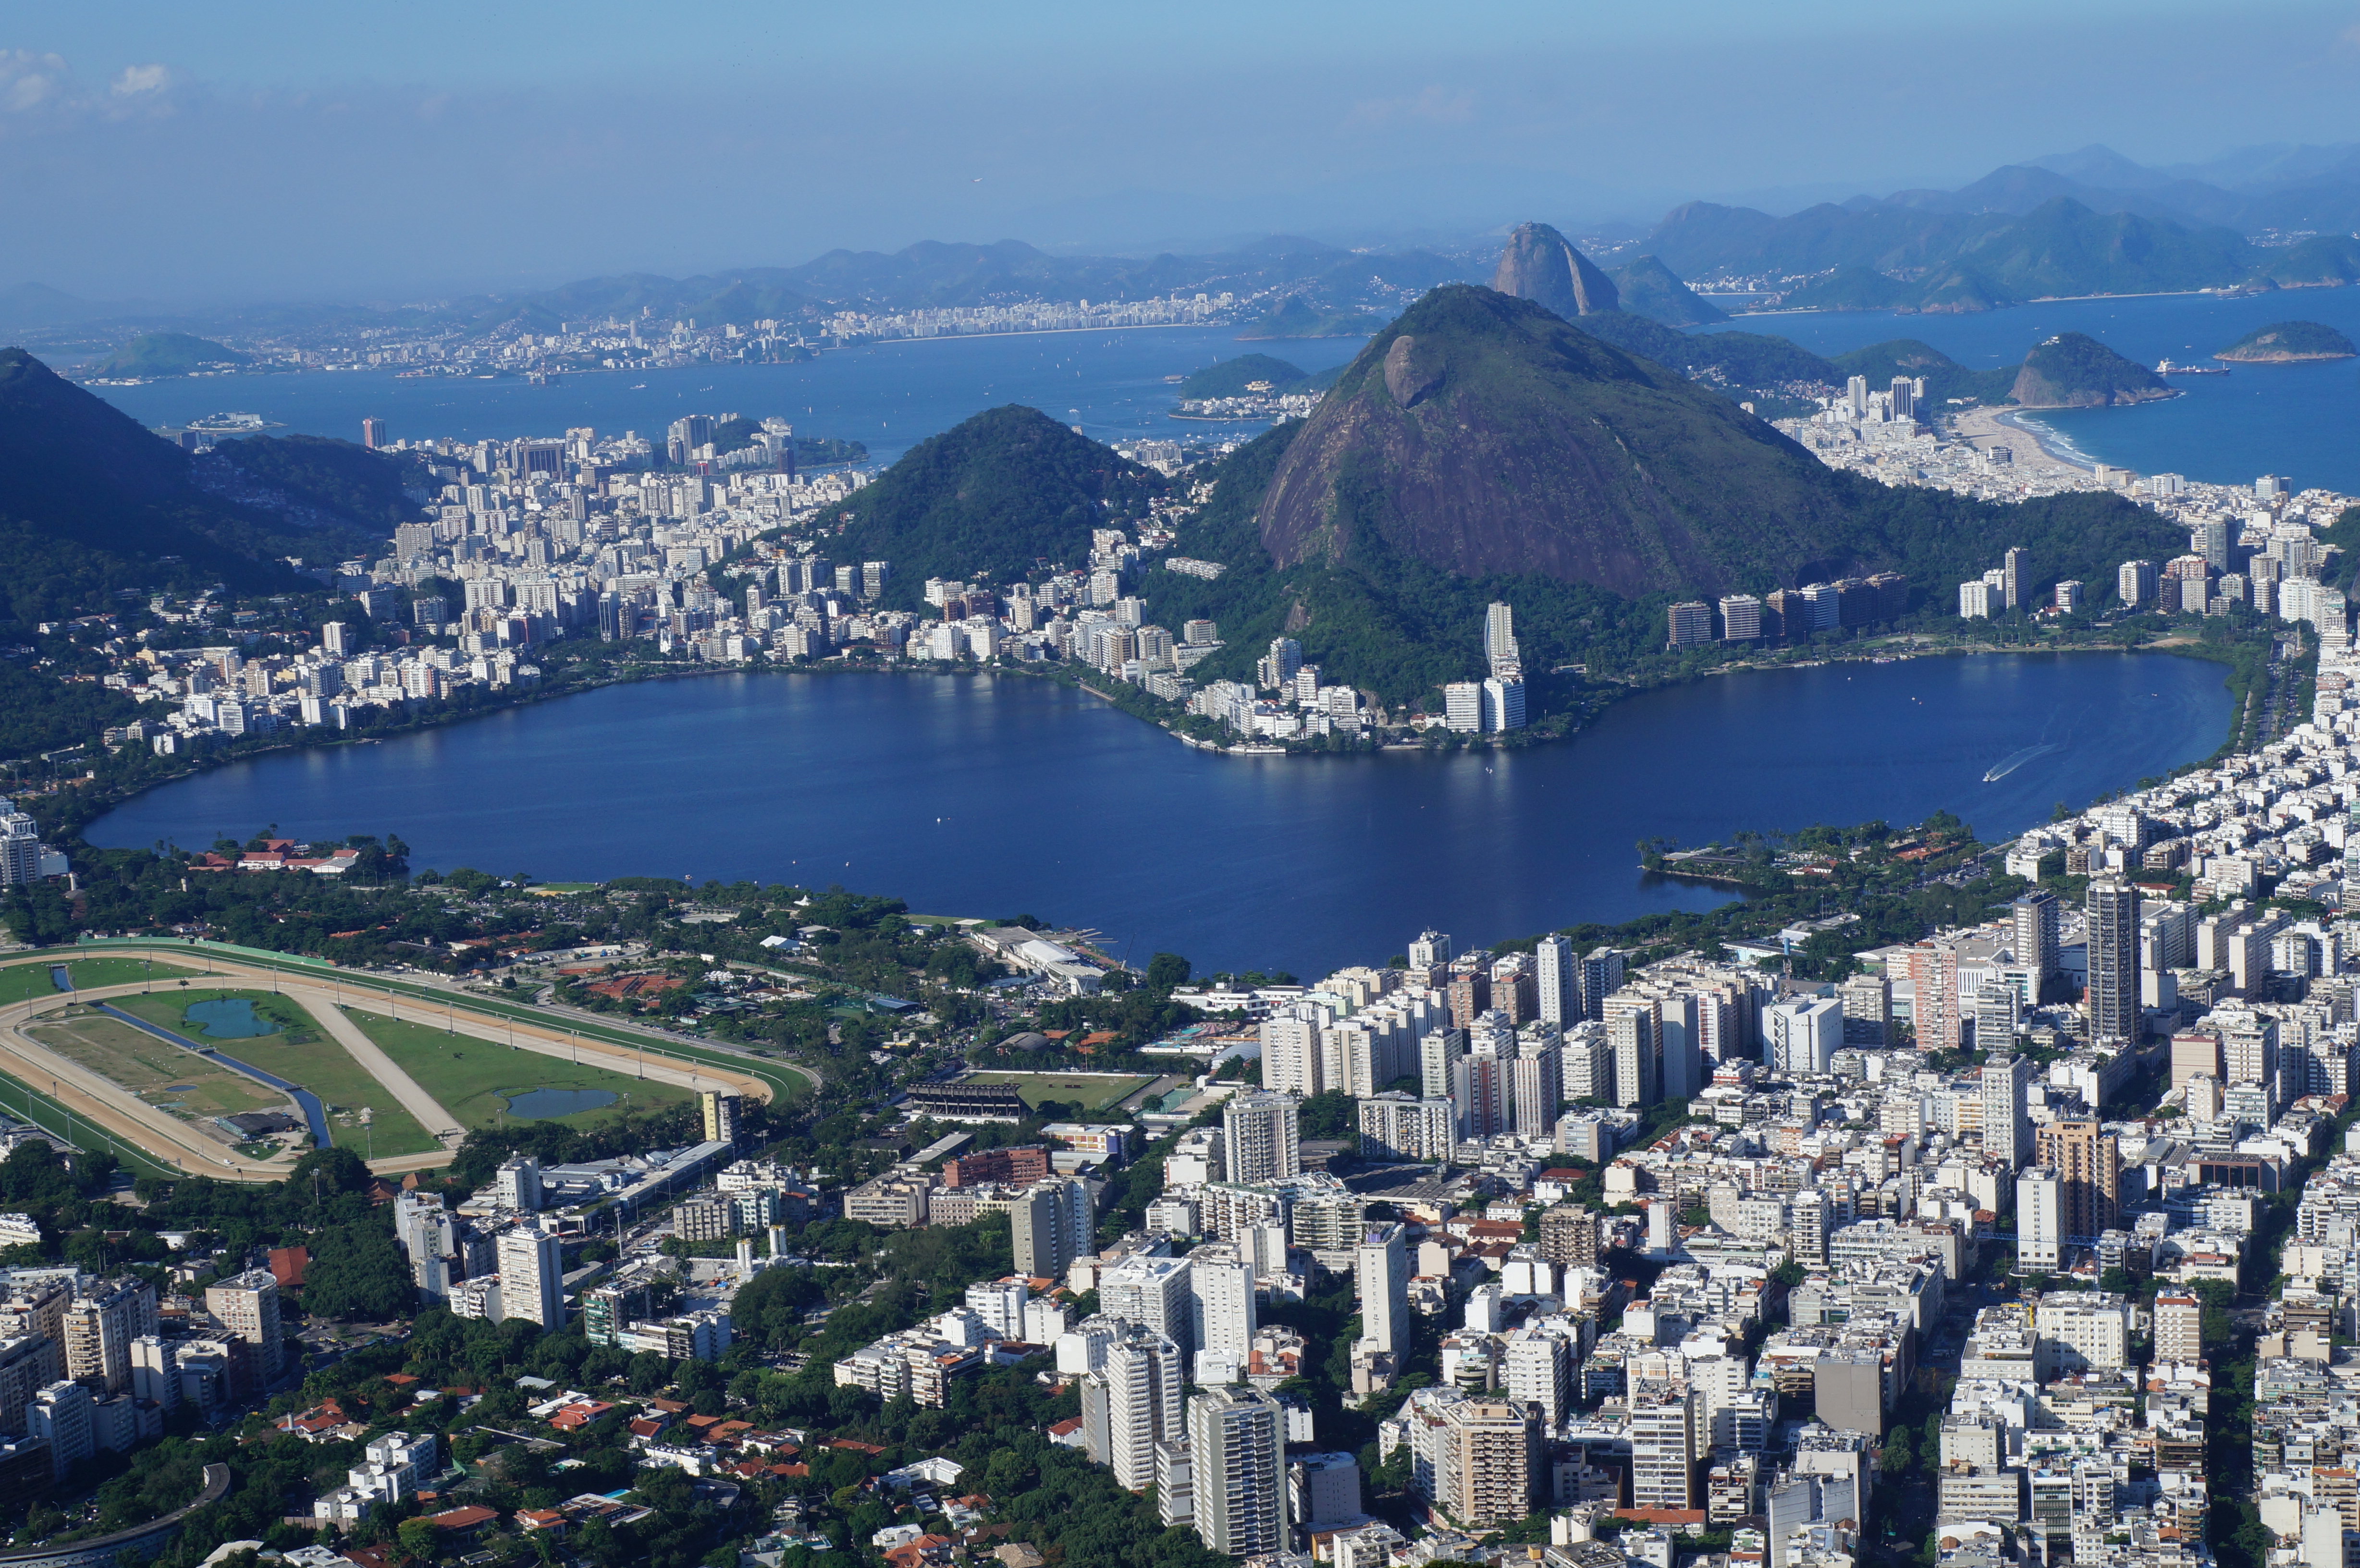 столица бразилии с высоты птичьего полета